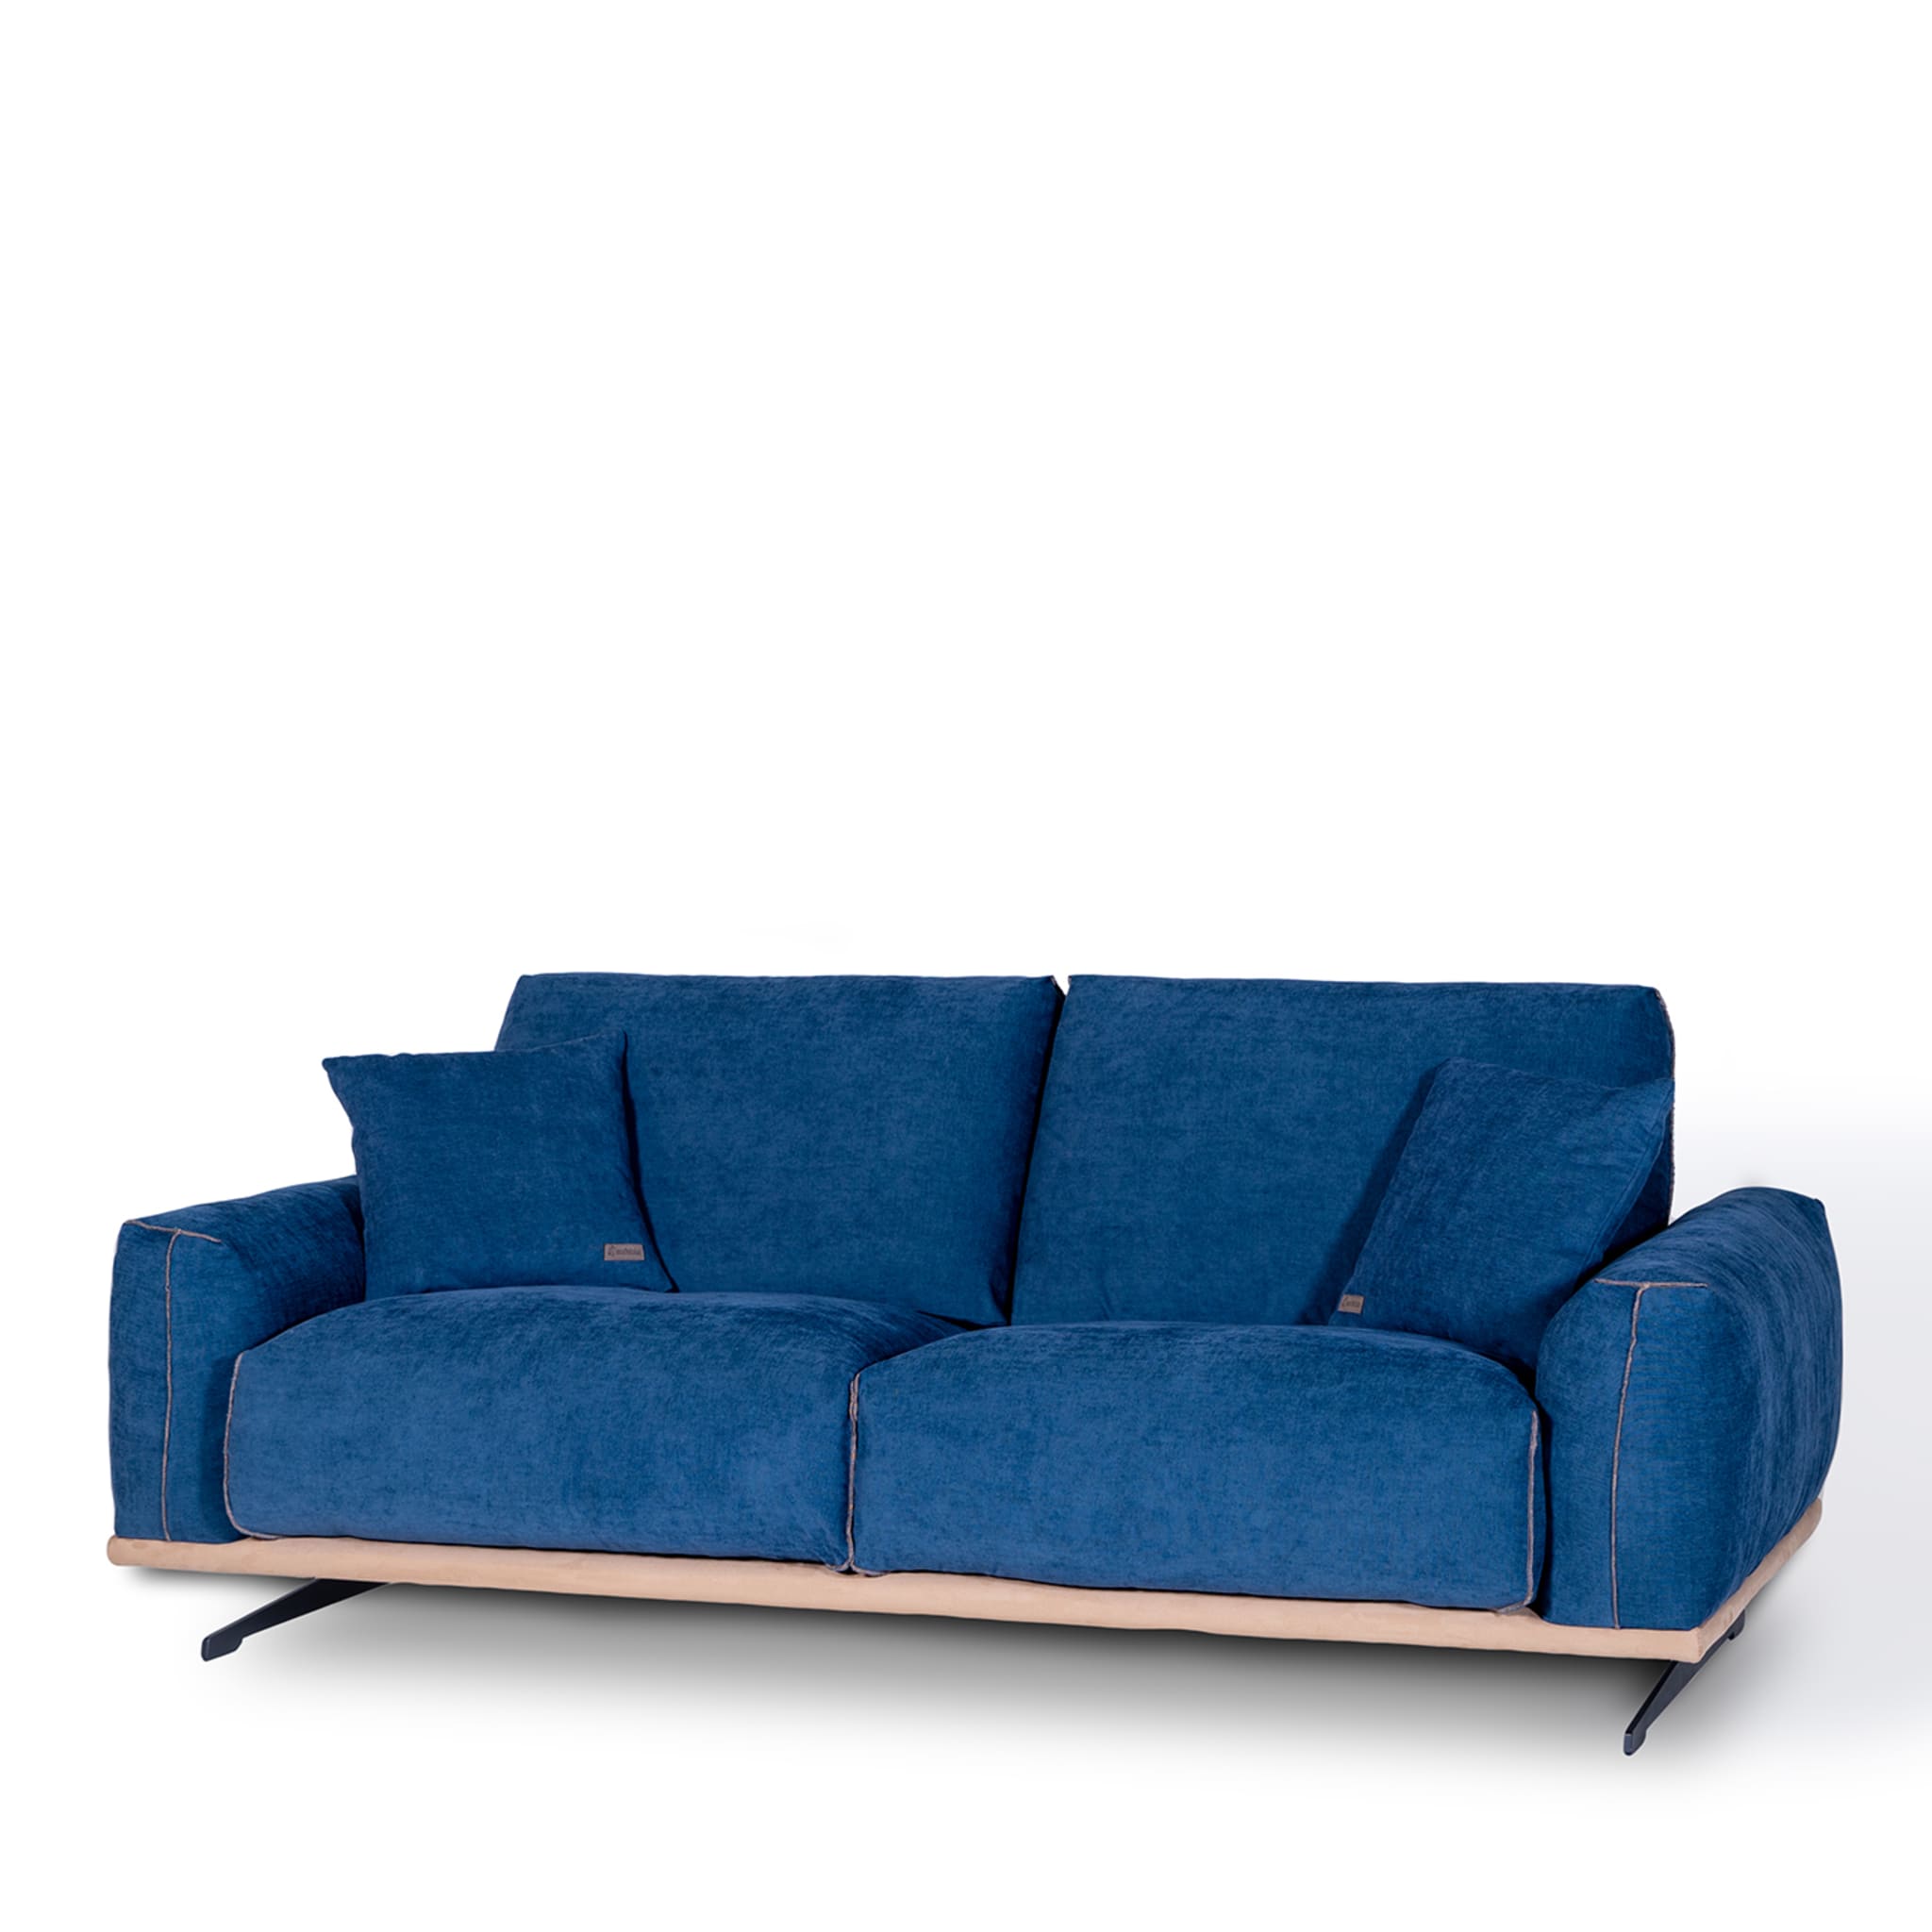 Boboli Blue 2-Seater Sofa by Marco & Giulio Mantellassi  - Alternative view 4